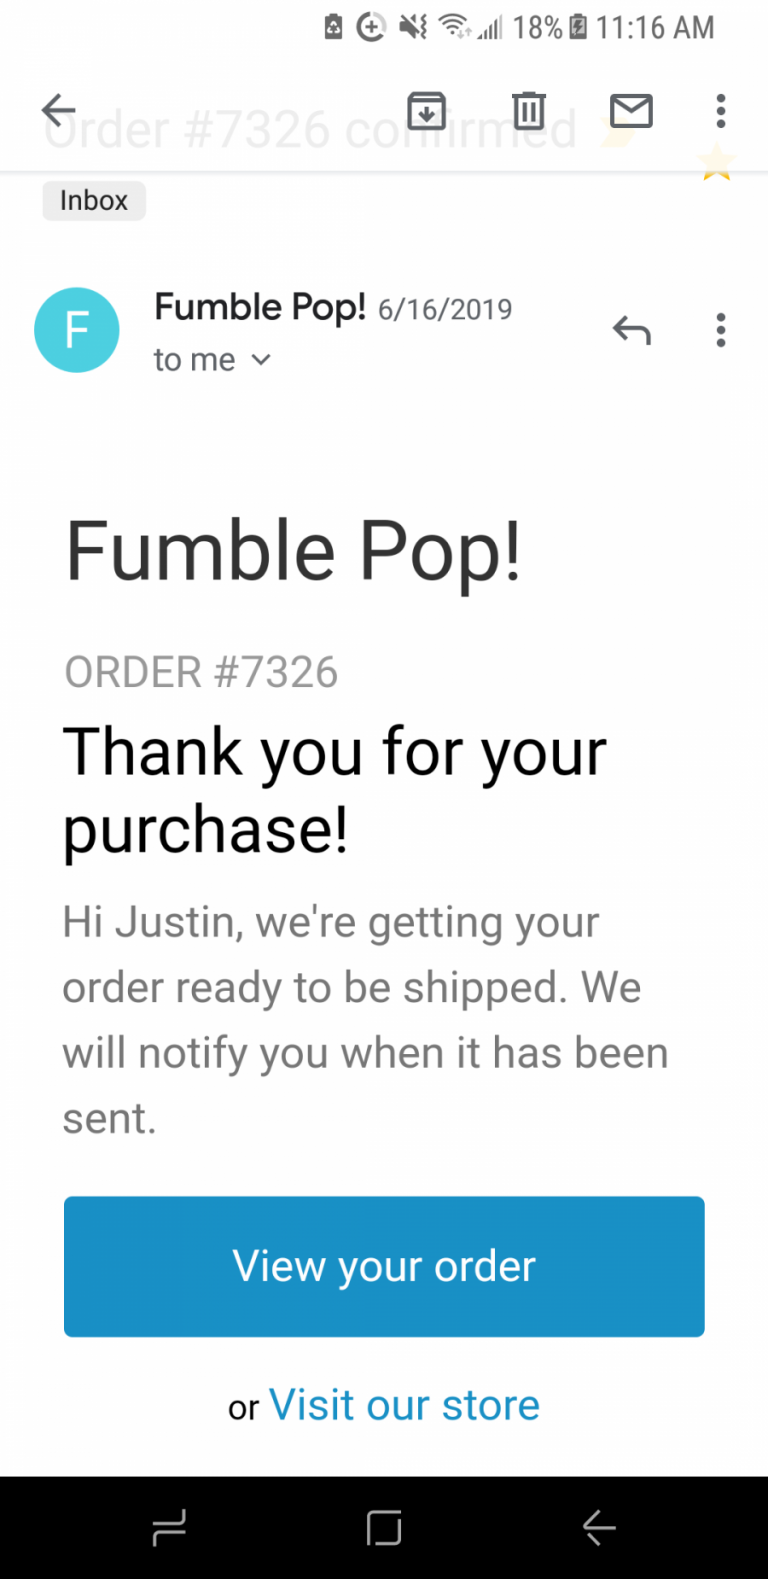 Fumble Pop